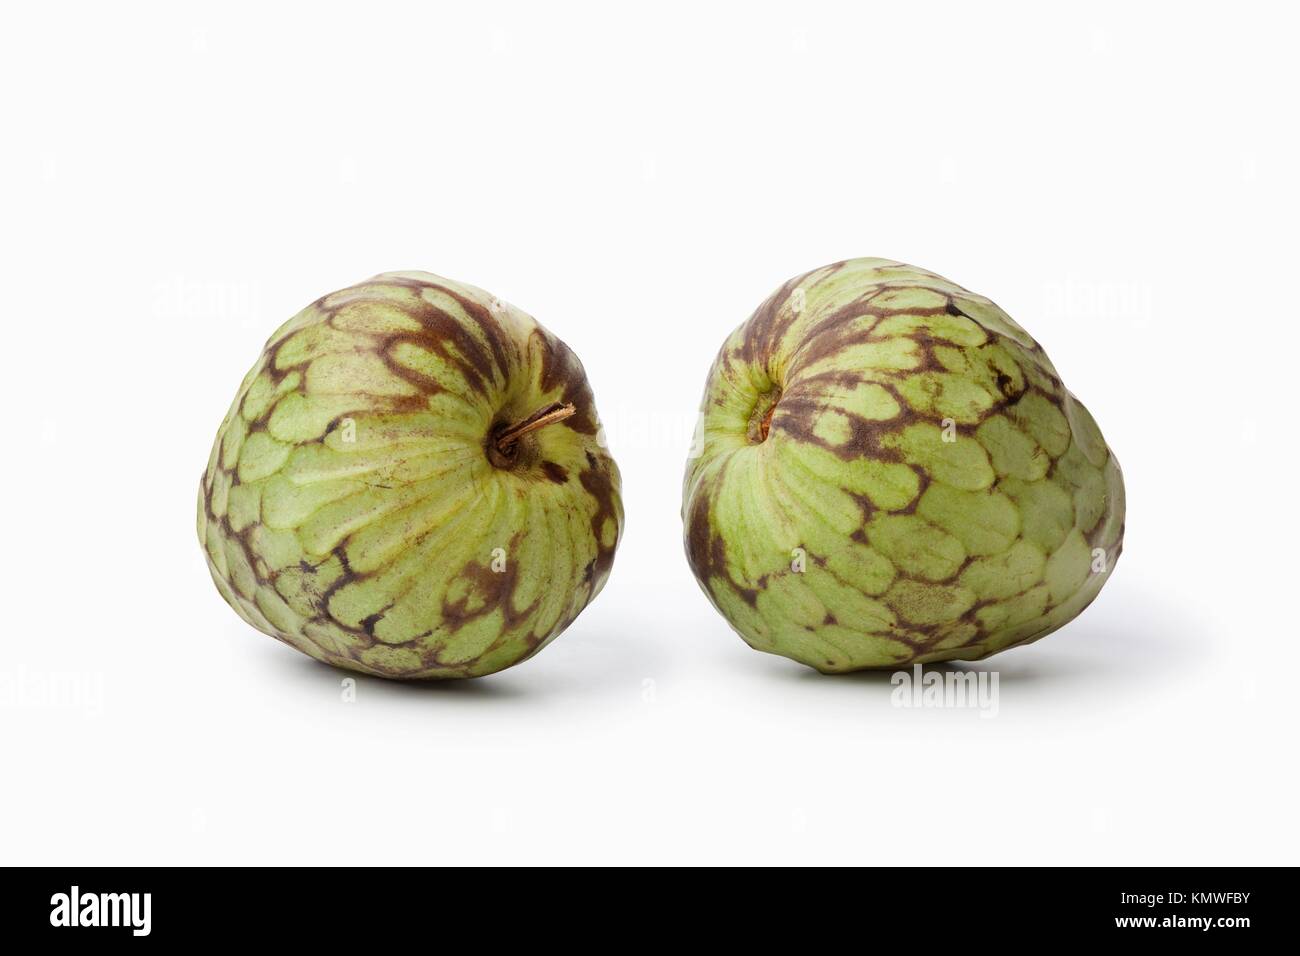 Pair of whole Cherimoya fruit isolated on white background Stock Photo